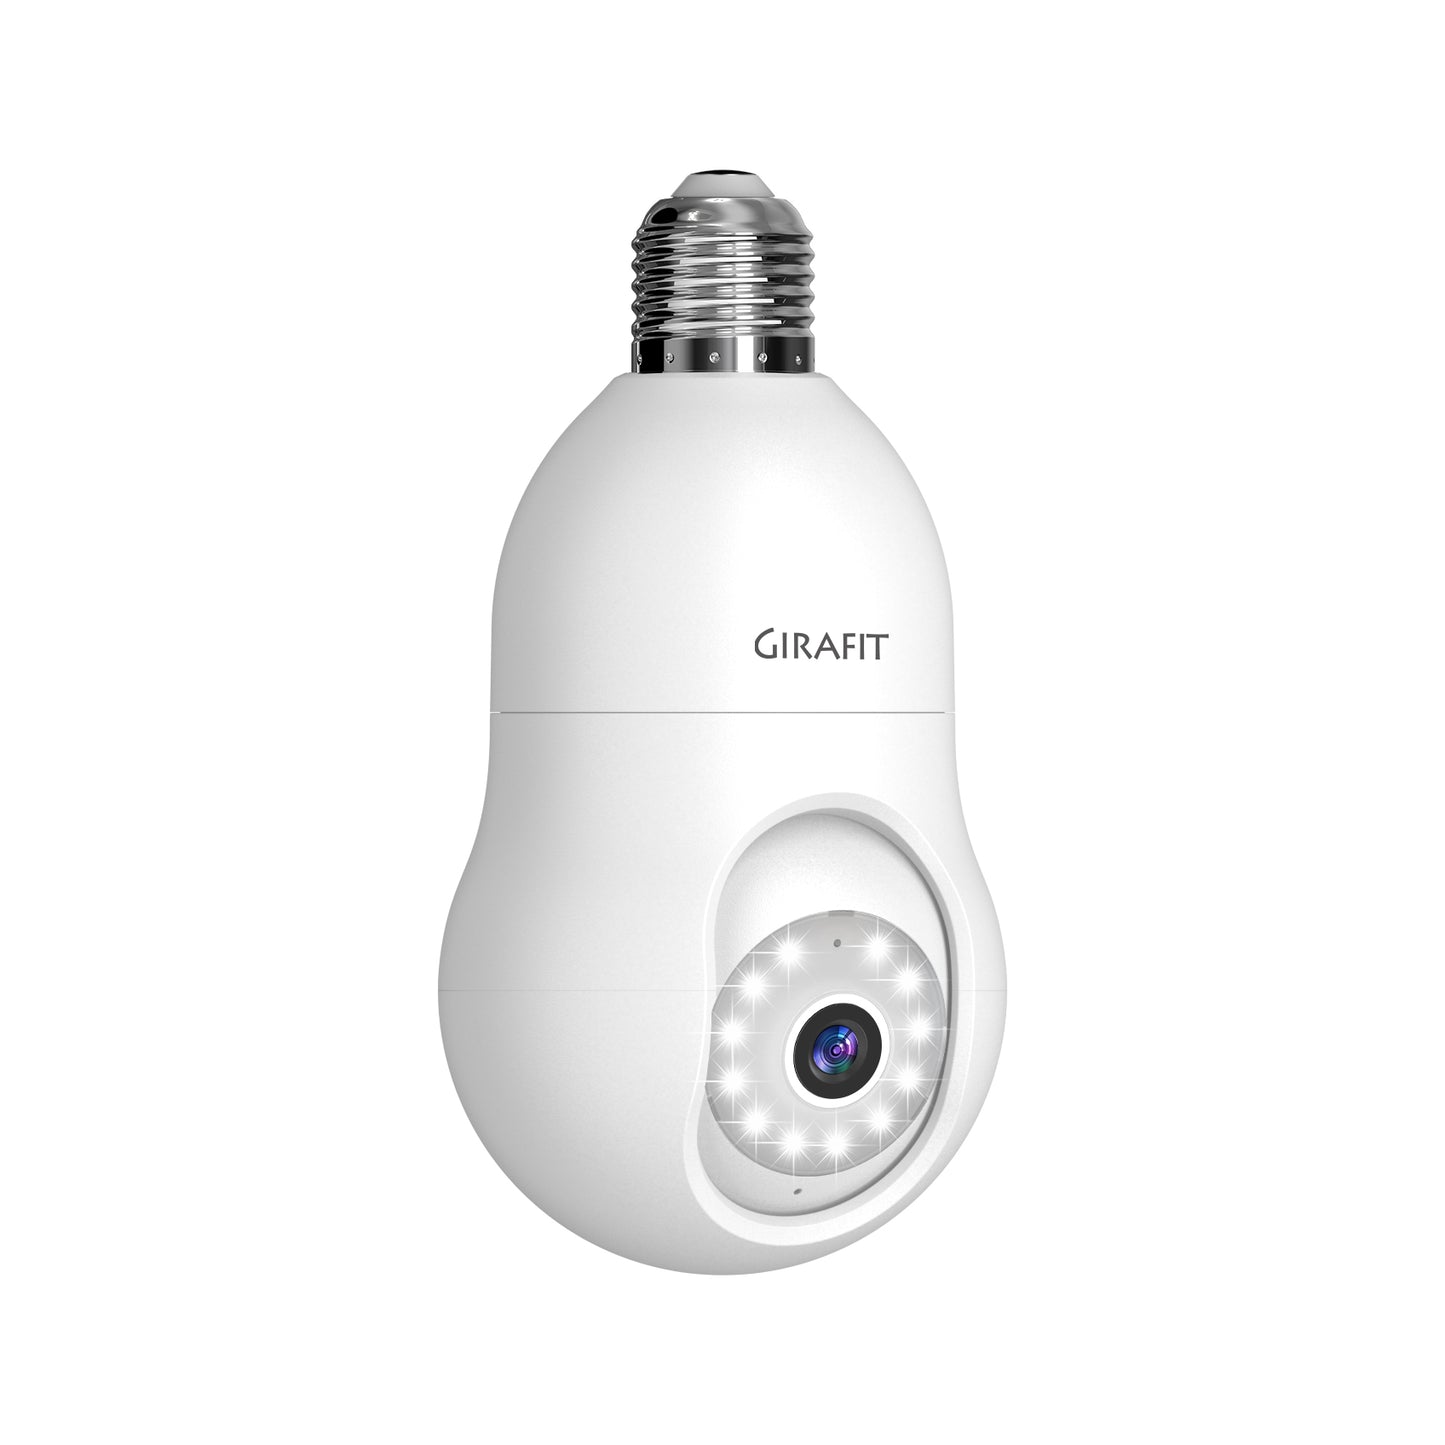 Girafit L200 2K WiFi Light Bulb Security Camera